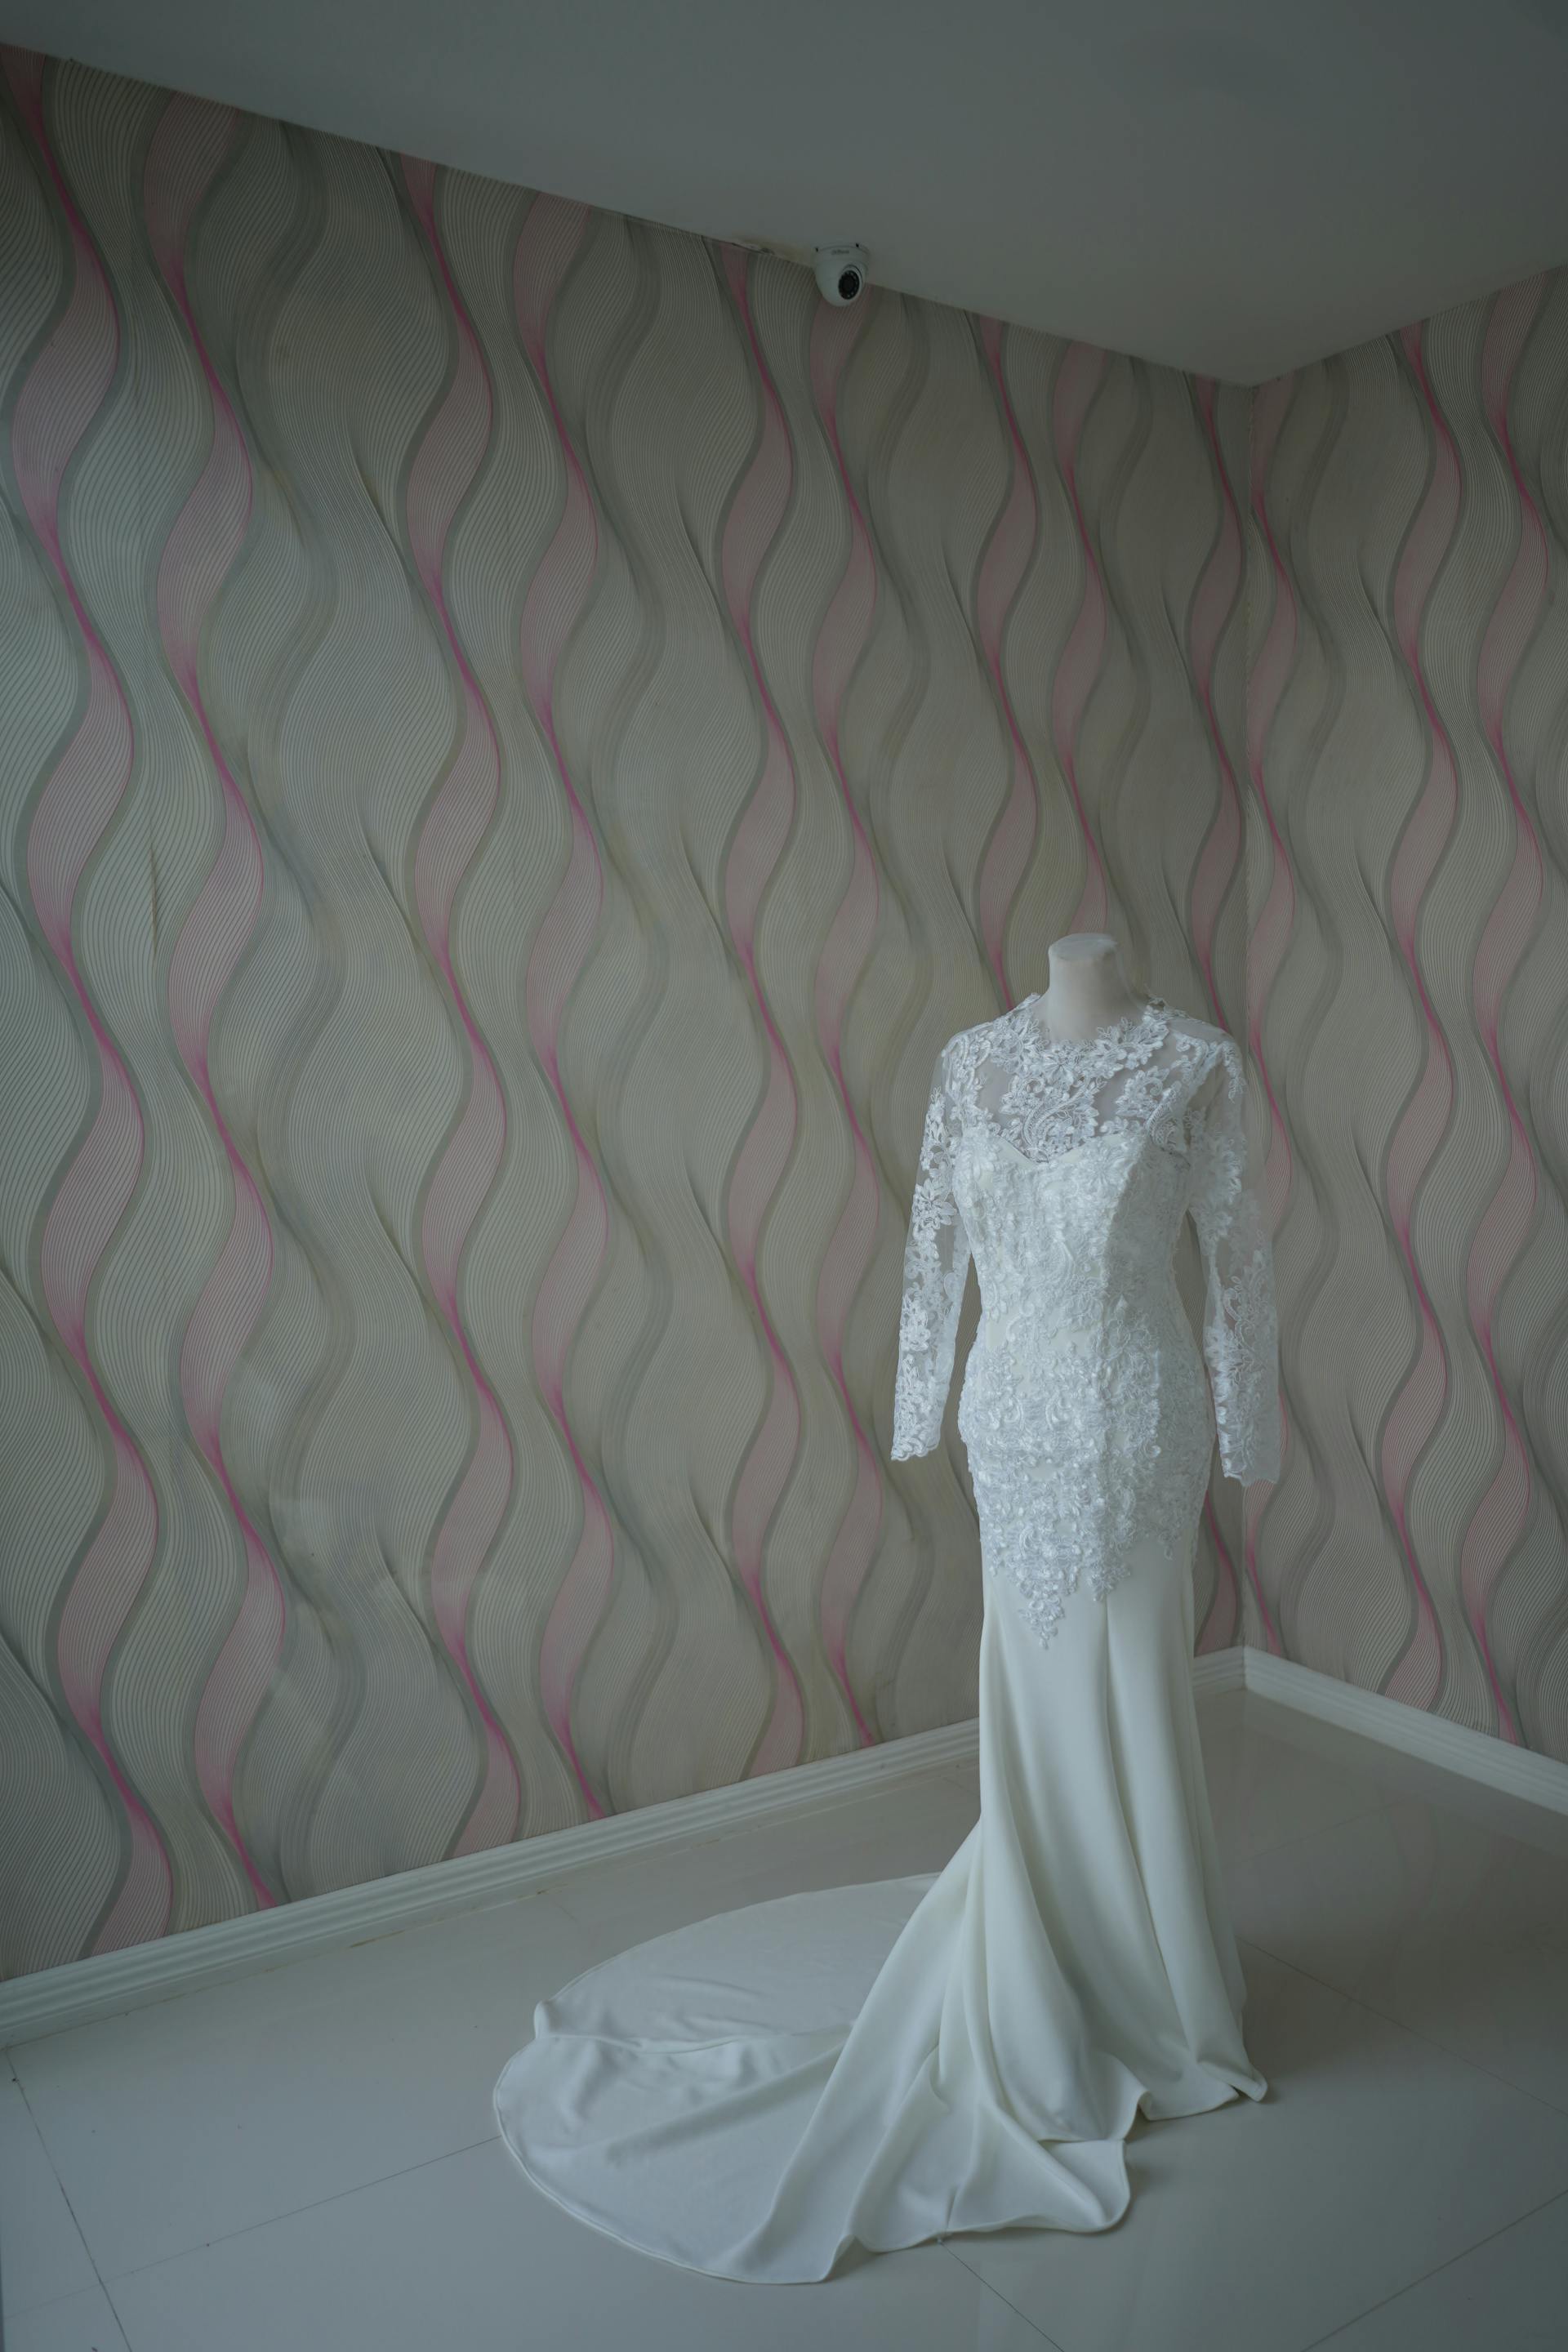 Une robe de mariée sur un mannequin | Source : Pexels